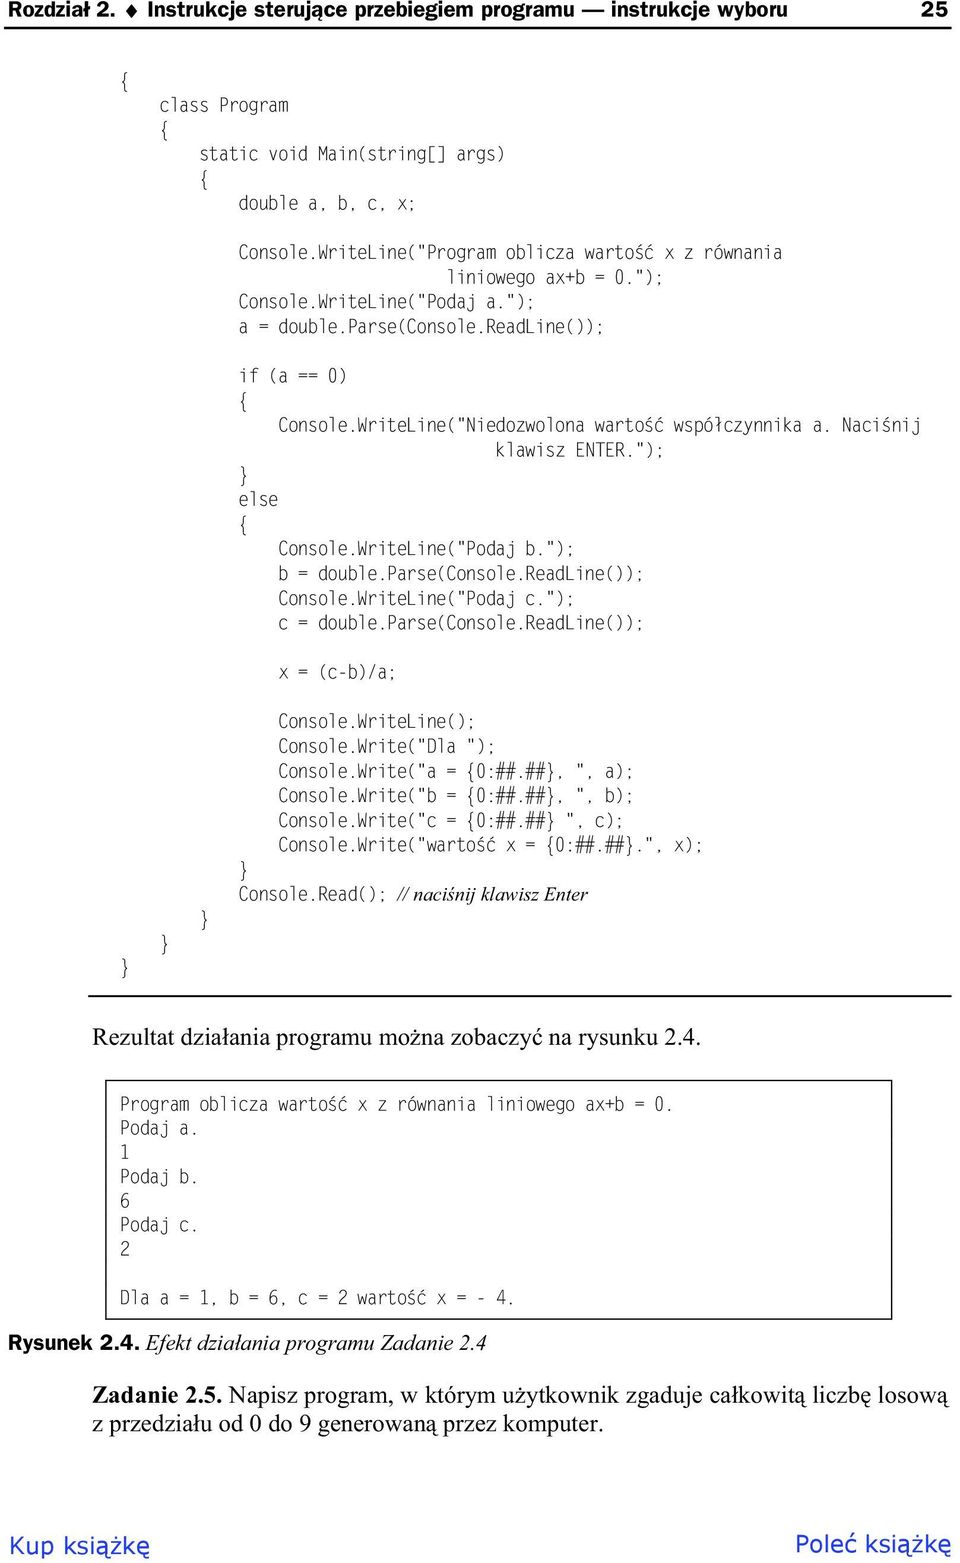 WriteLine("Niedozwolona warto wspó czynnika a. Naci nij klawisz ENTER."); Console.WriteLine("Podaj b."); b = double.parse(console.readline()); Console.WriteLine("Podaj c."); c = double.parse(console.readline()); x = (c-b)/a; Console.